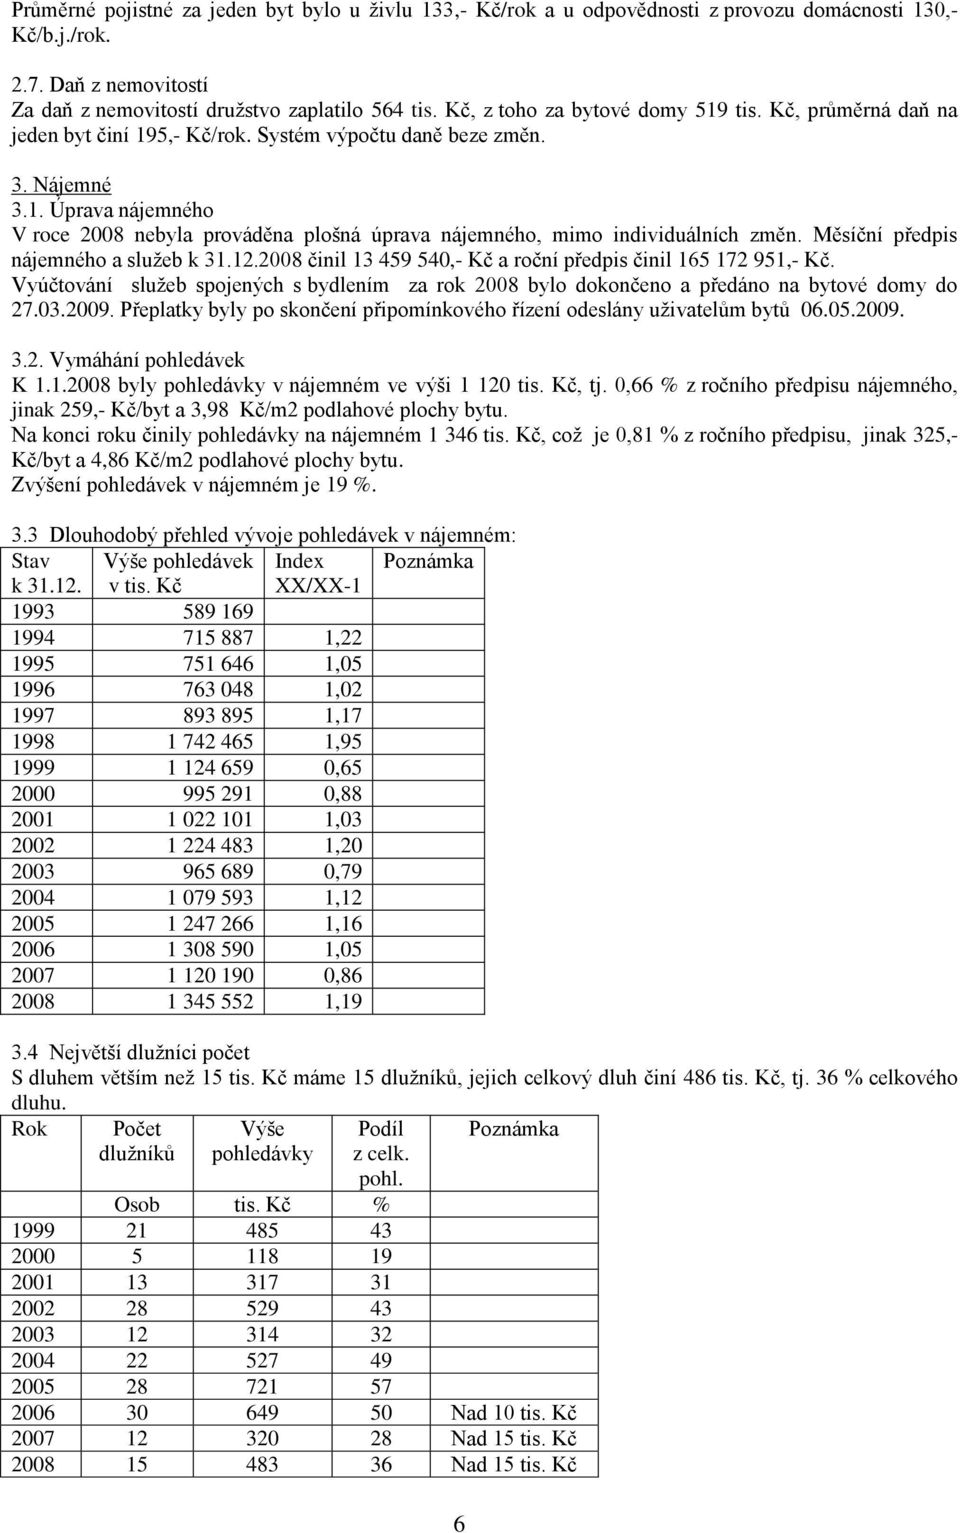 Měsíční předpis nájemného a sluţeb k 31.12.2008 činil 13 459 540,- Kč a roční předpis činil 165 172 951,- Kč.